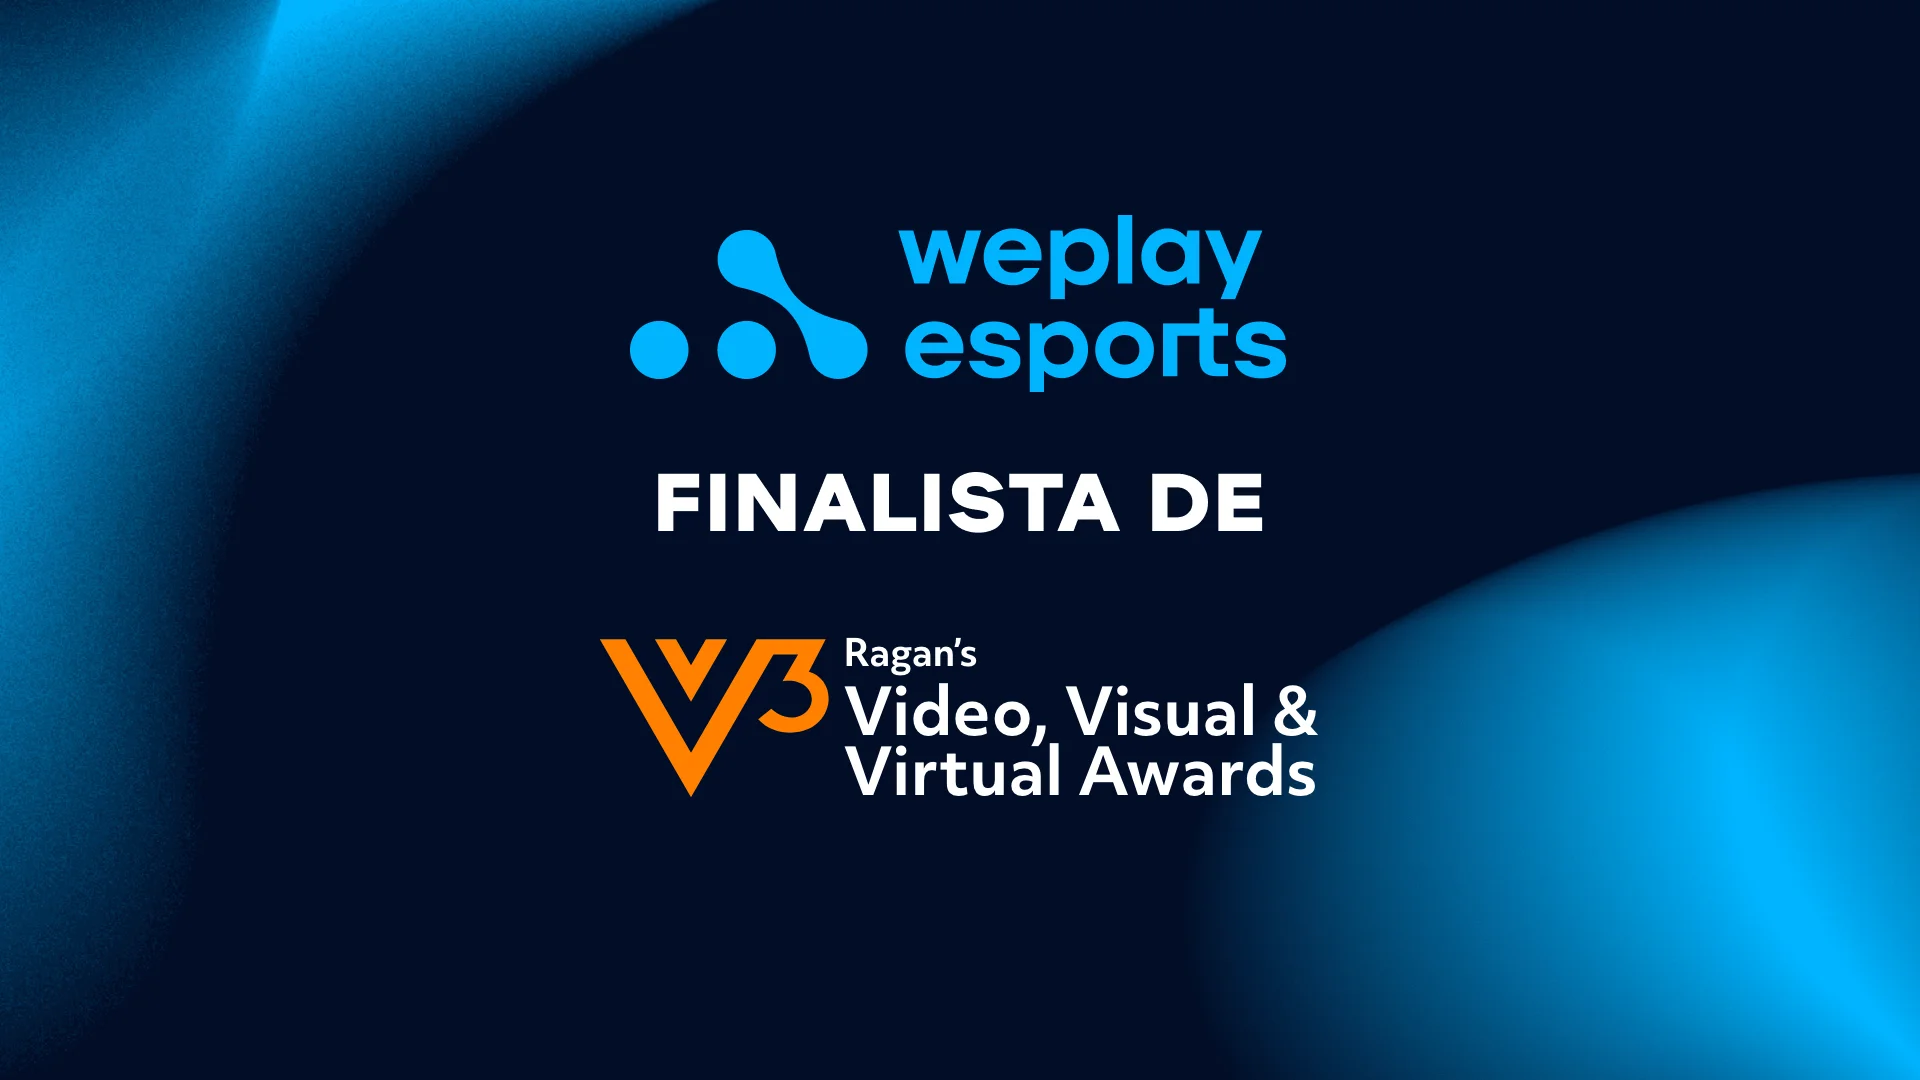 WePlay Esports es finalista de los premios Ragan’s Video, Visual & Virtual Awards 2022. Imagen: WePlay Holding